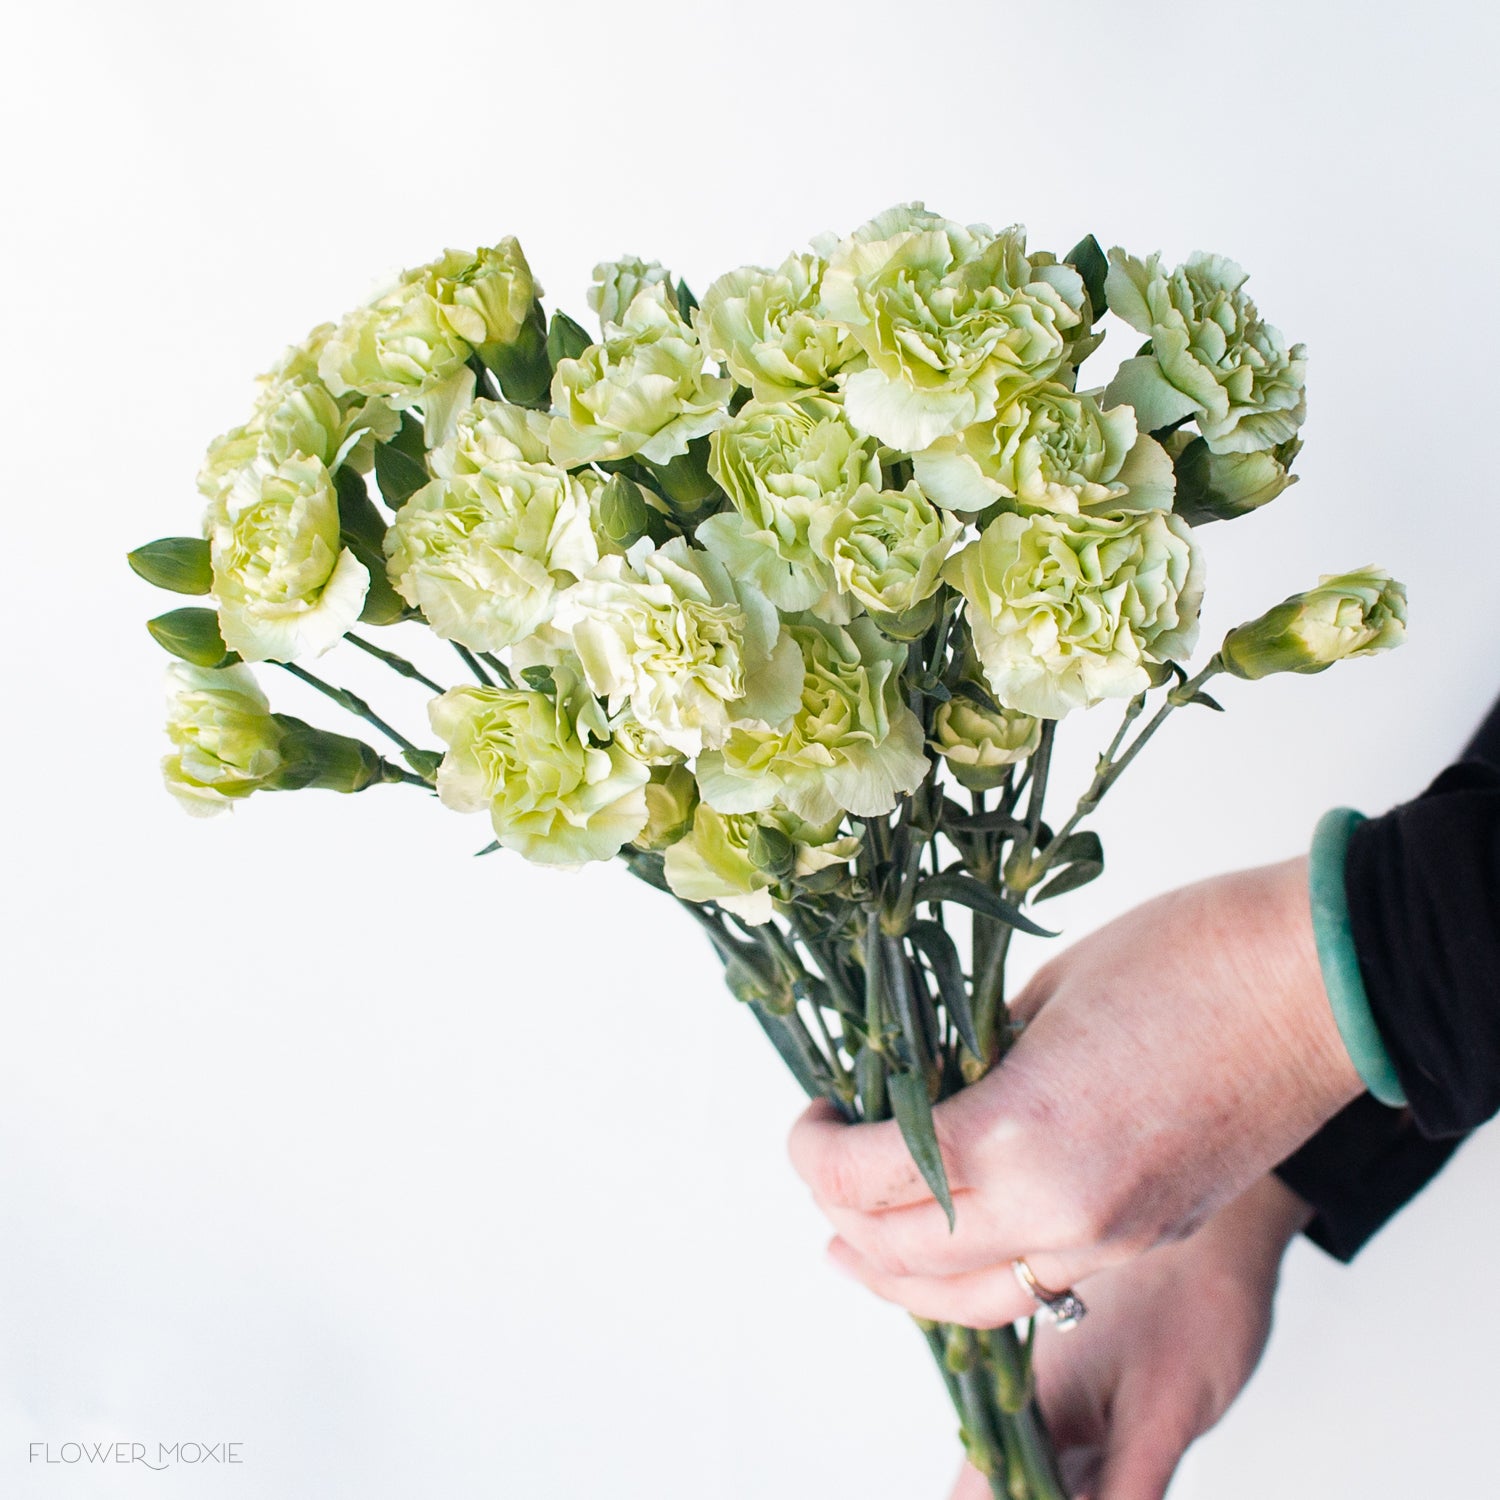 green carnation flower